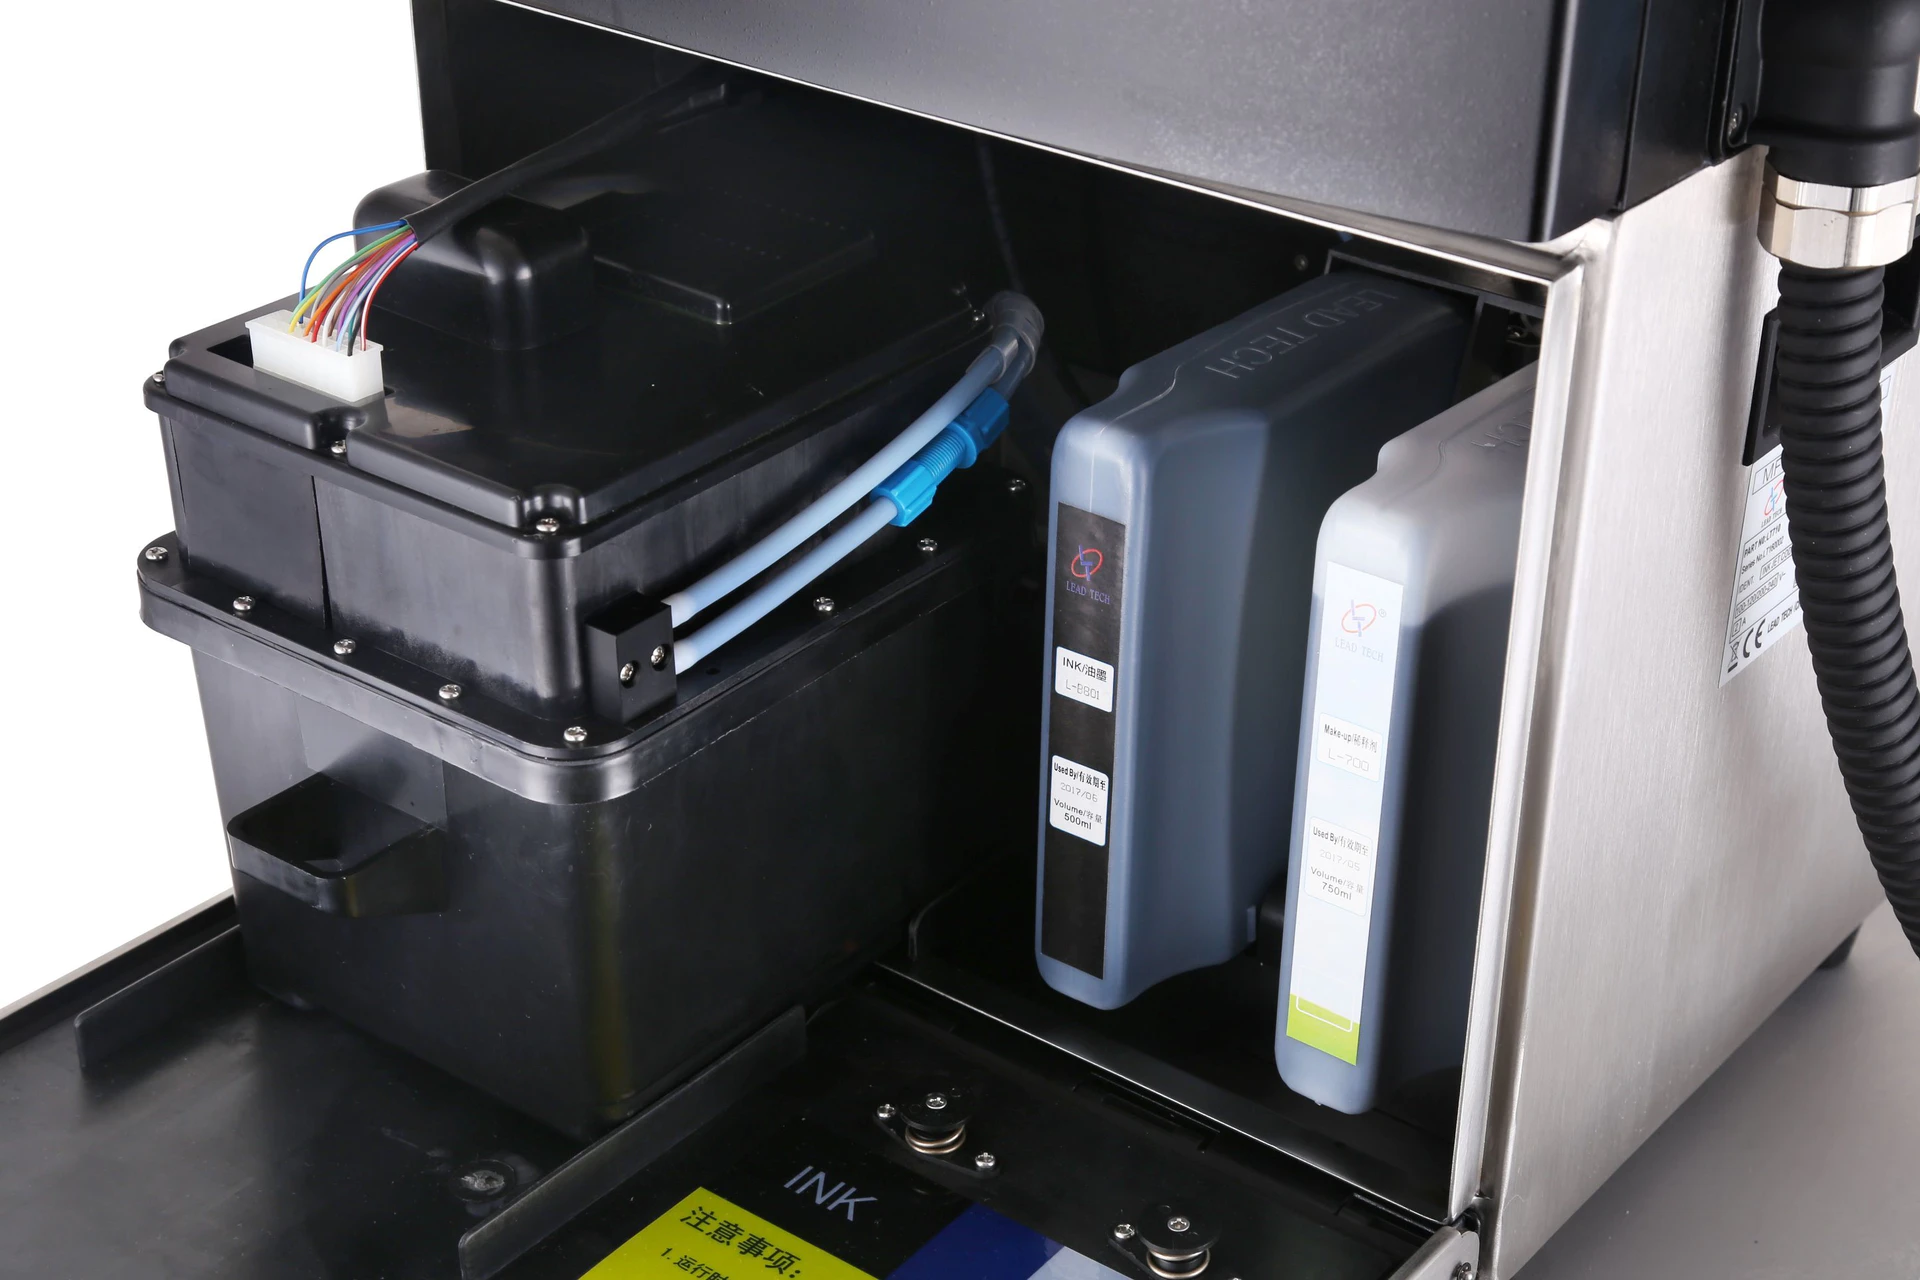 Lead Tech Lt760 Low Cost Cij Inkjet Printer